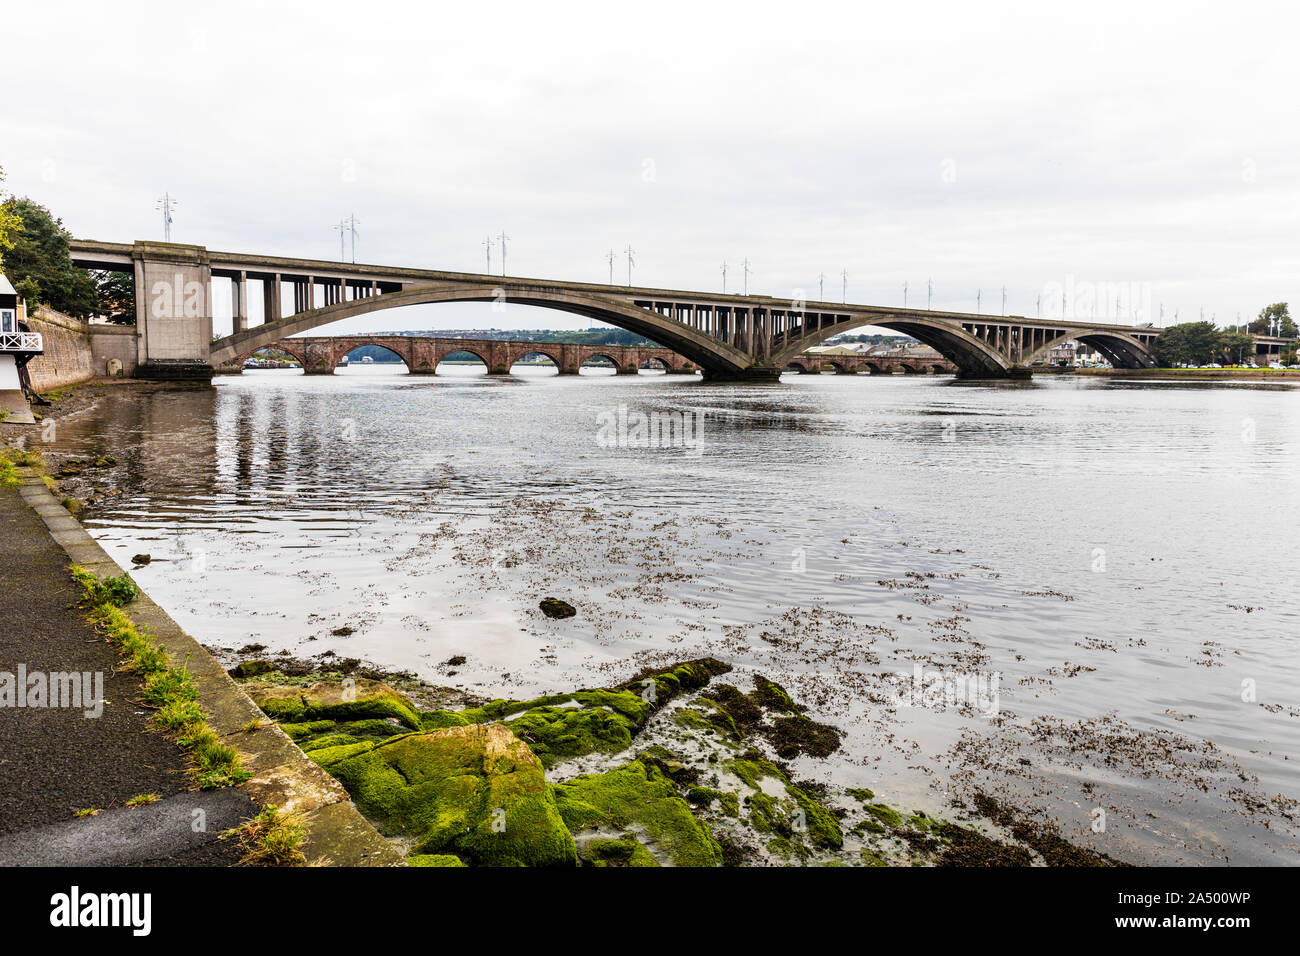 Die Royal Tweed Bridge und die Alte Brücke über den Fluss Tweed in Berwick Upon Tweed, Berwick upon Tweed, Northumberland, Großbritannien, Brücke, Brücken Stockfoto